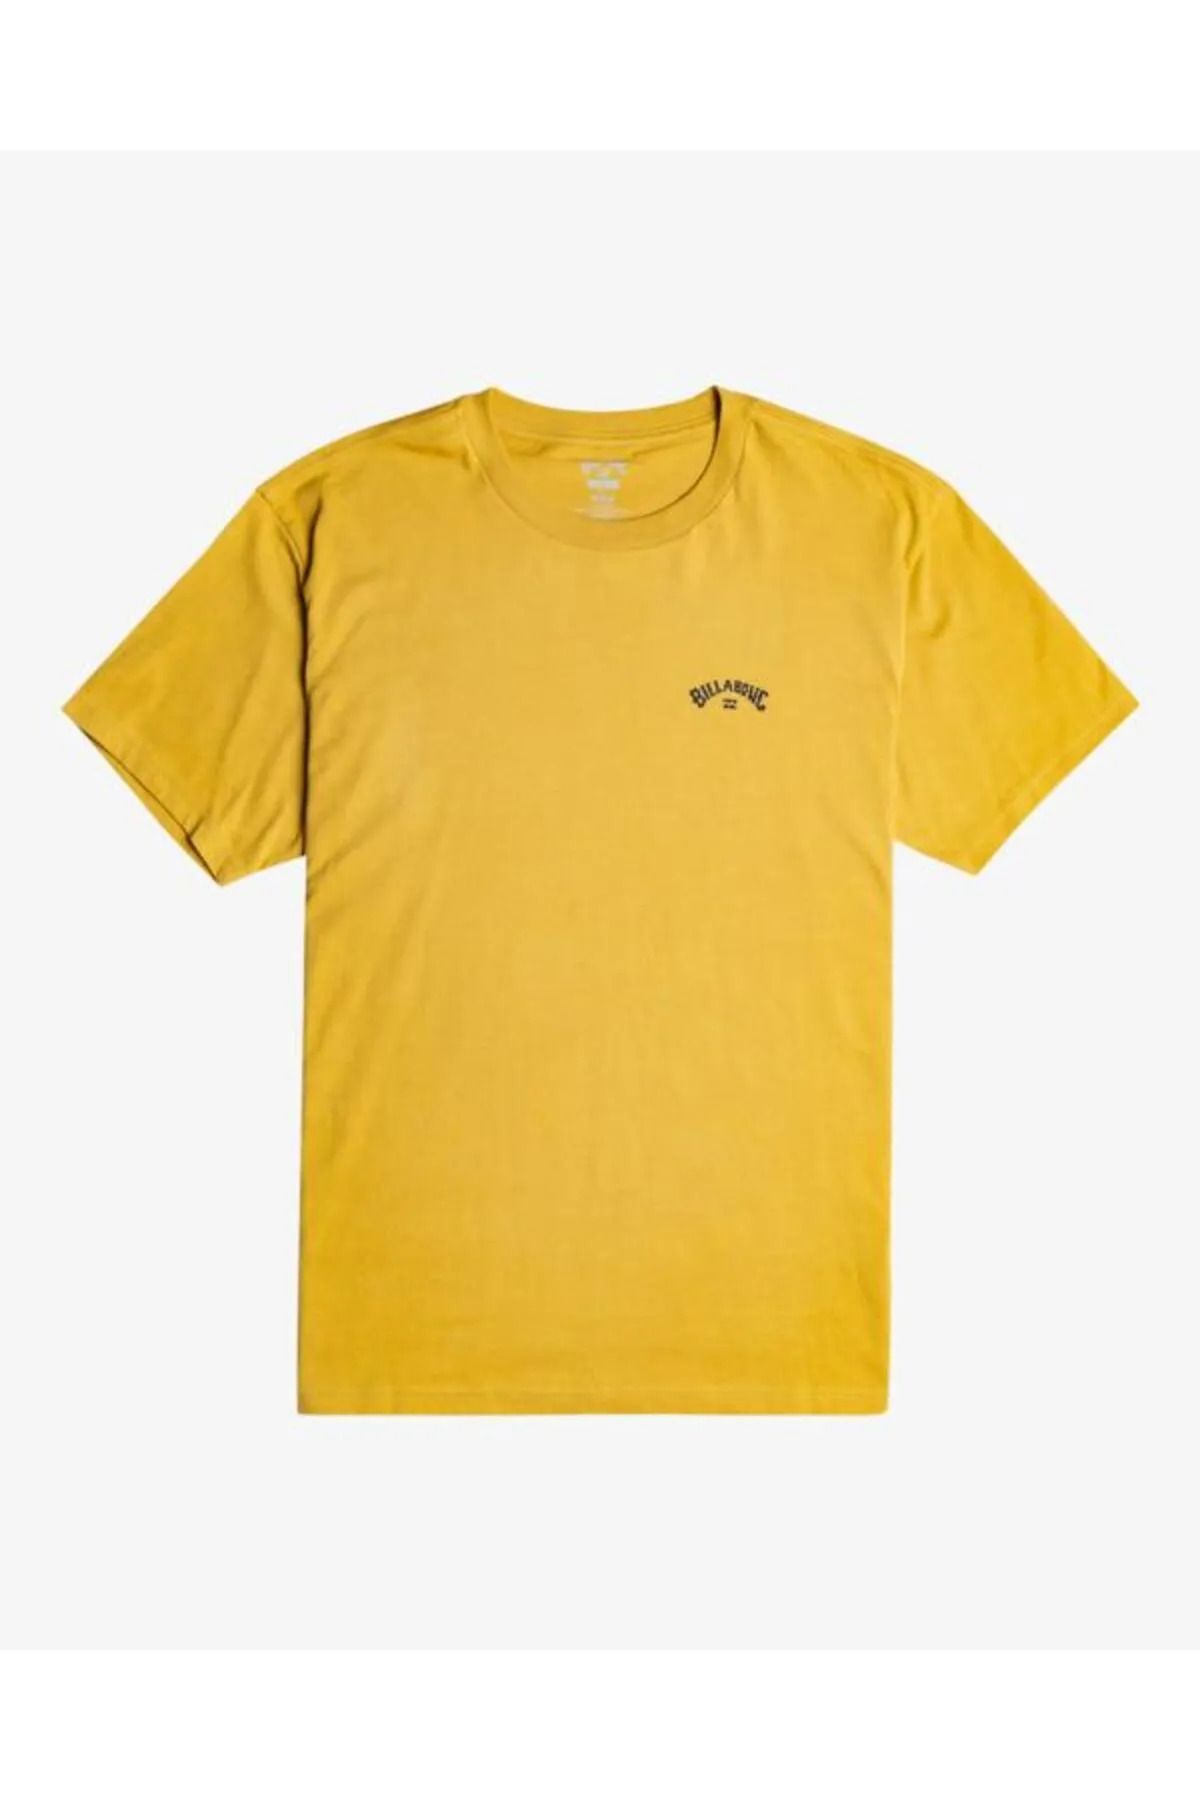 Billabong Arch Wave Tees Erkek T-shirt